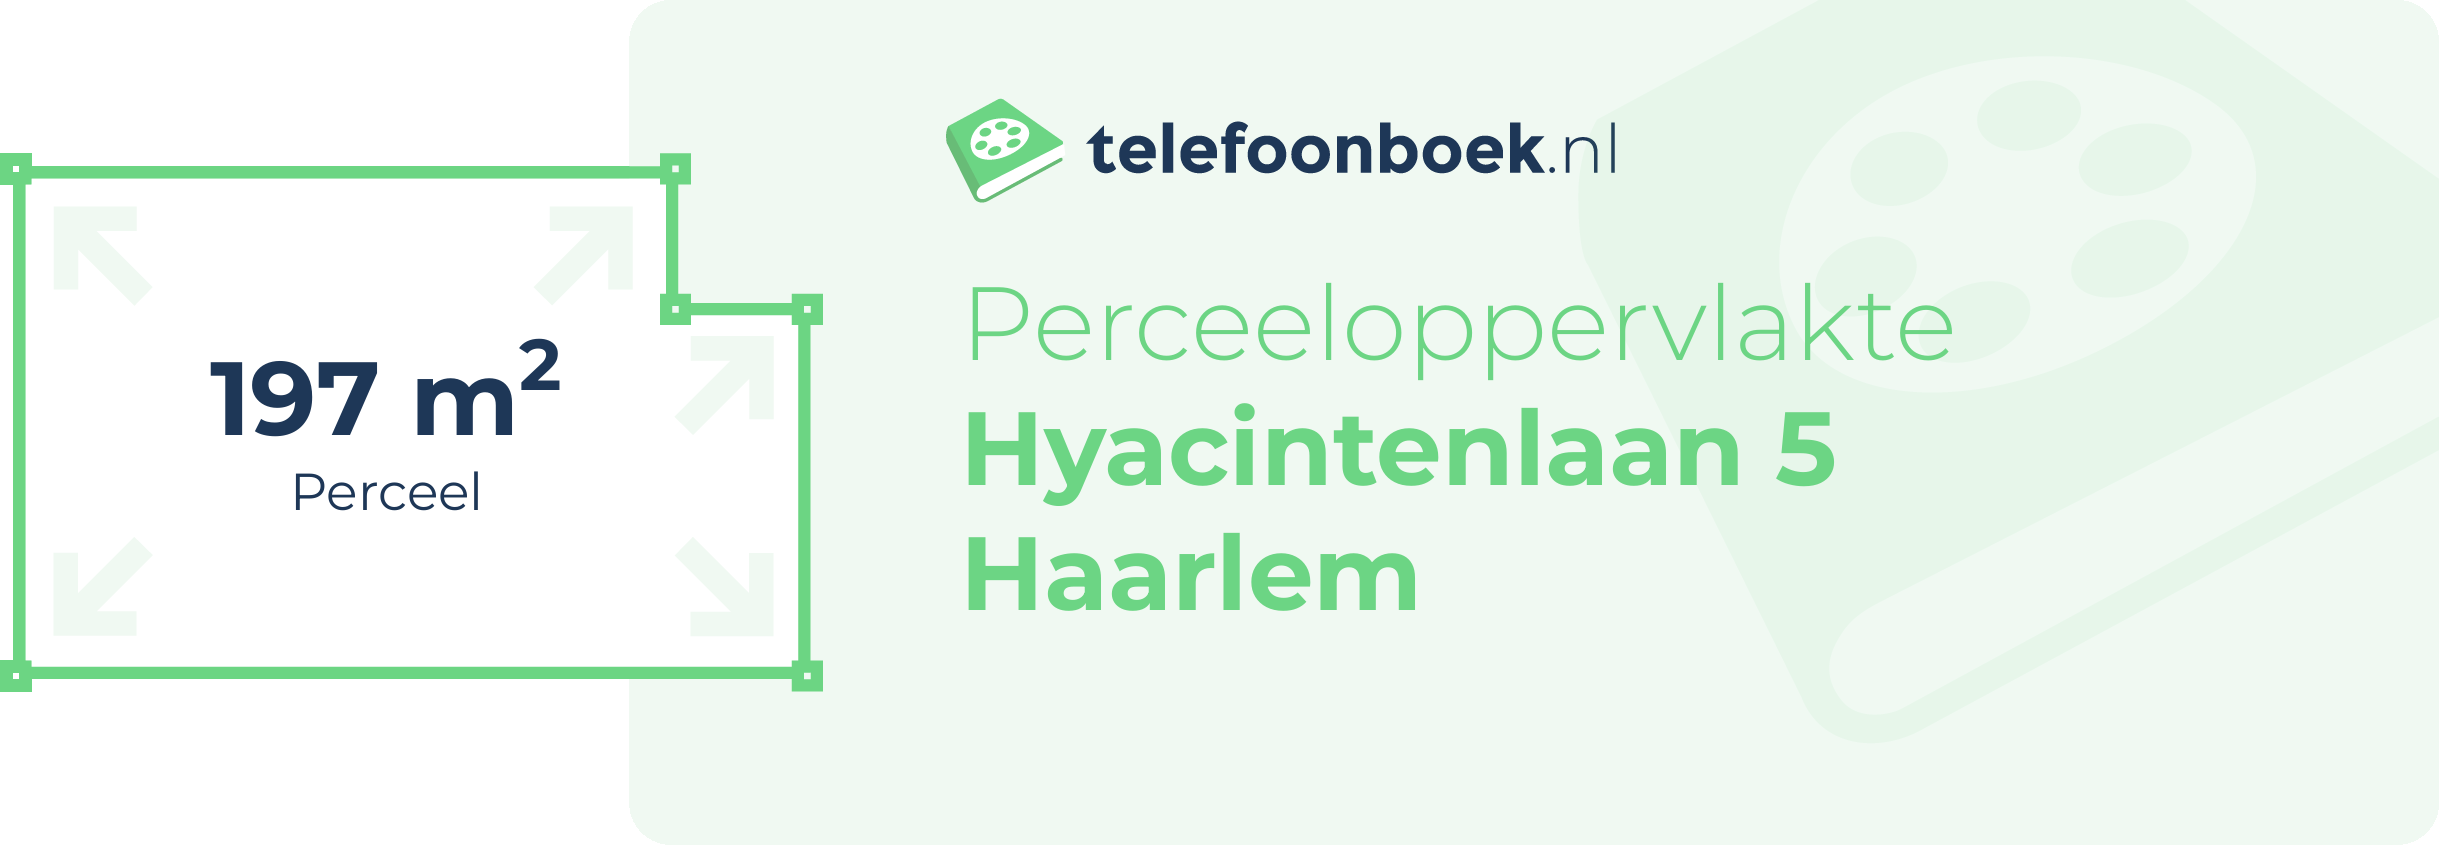 Perceeloppervlakte Hyacintenlaan 5 Haarlem